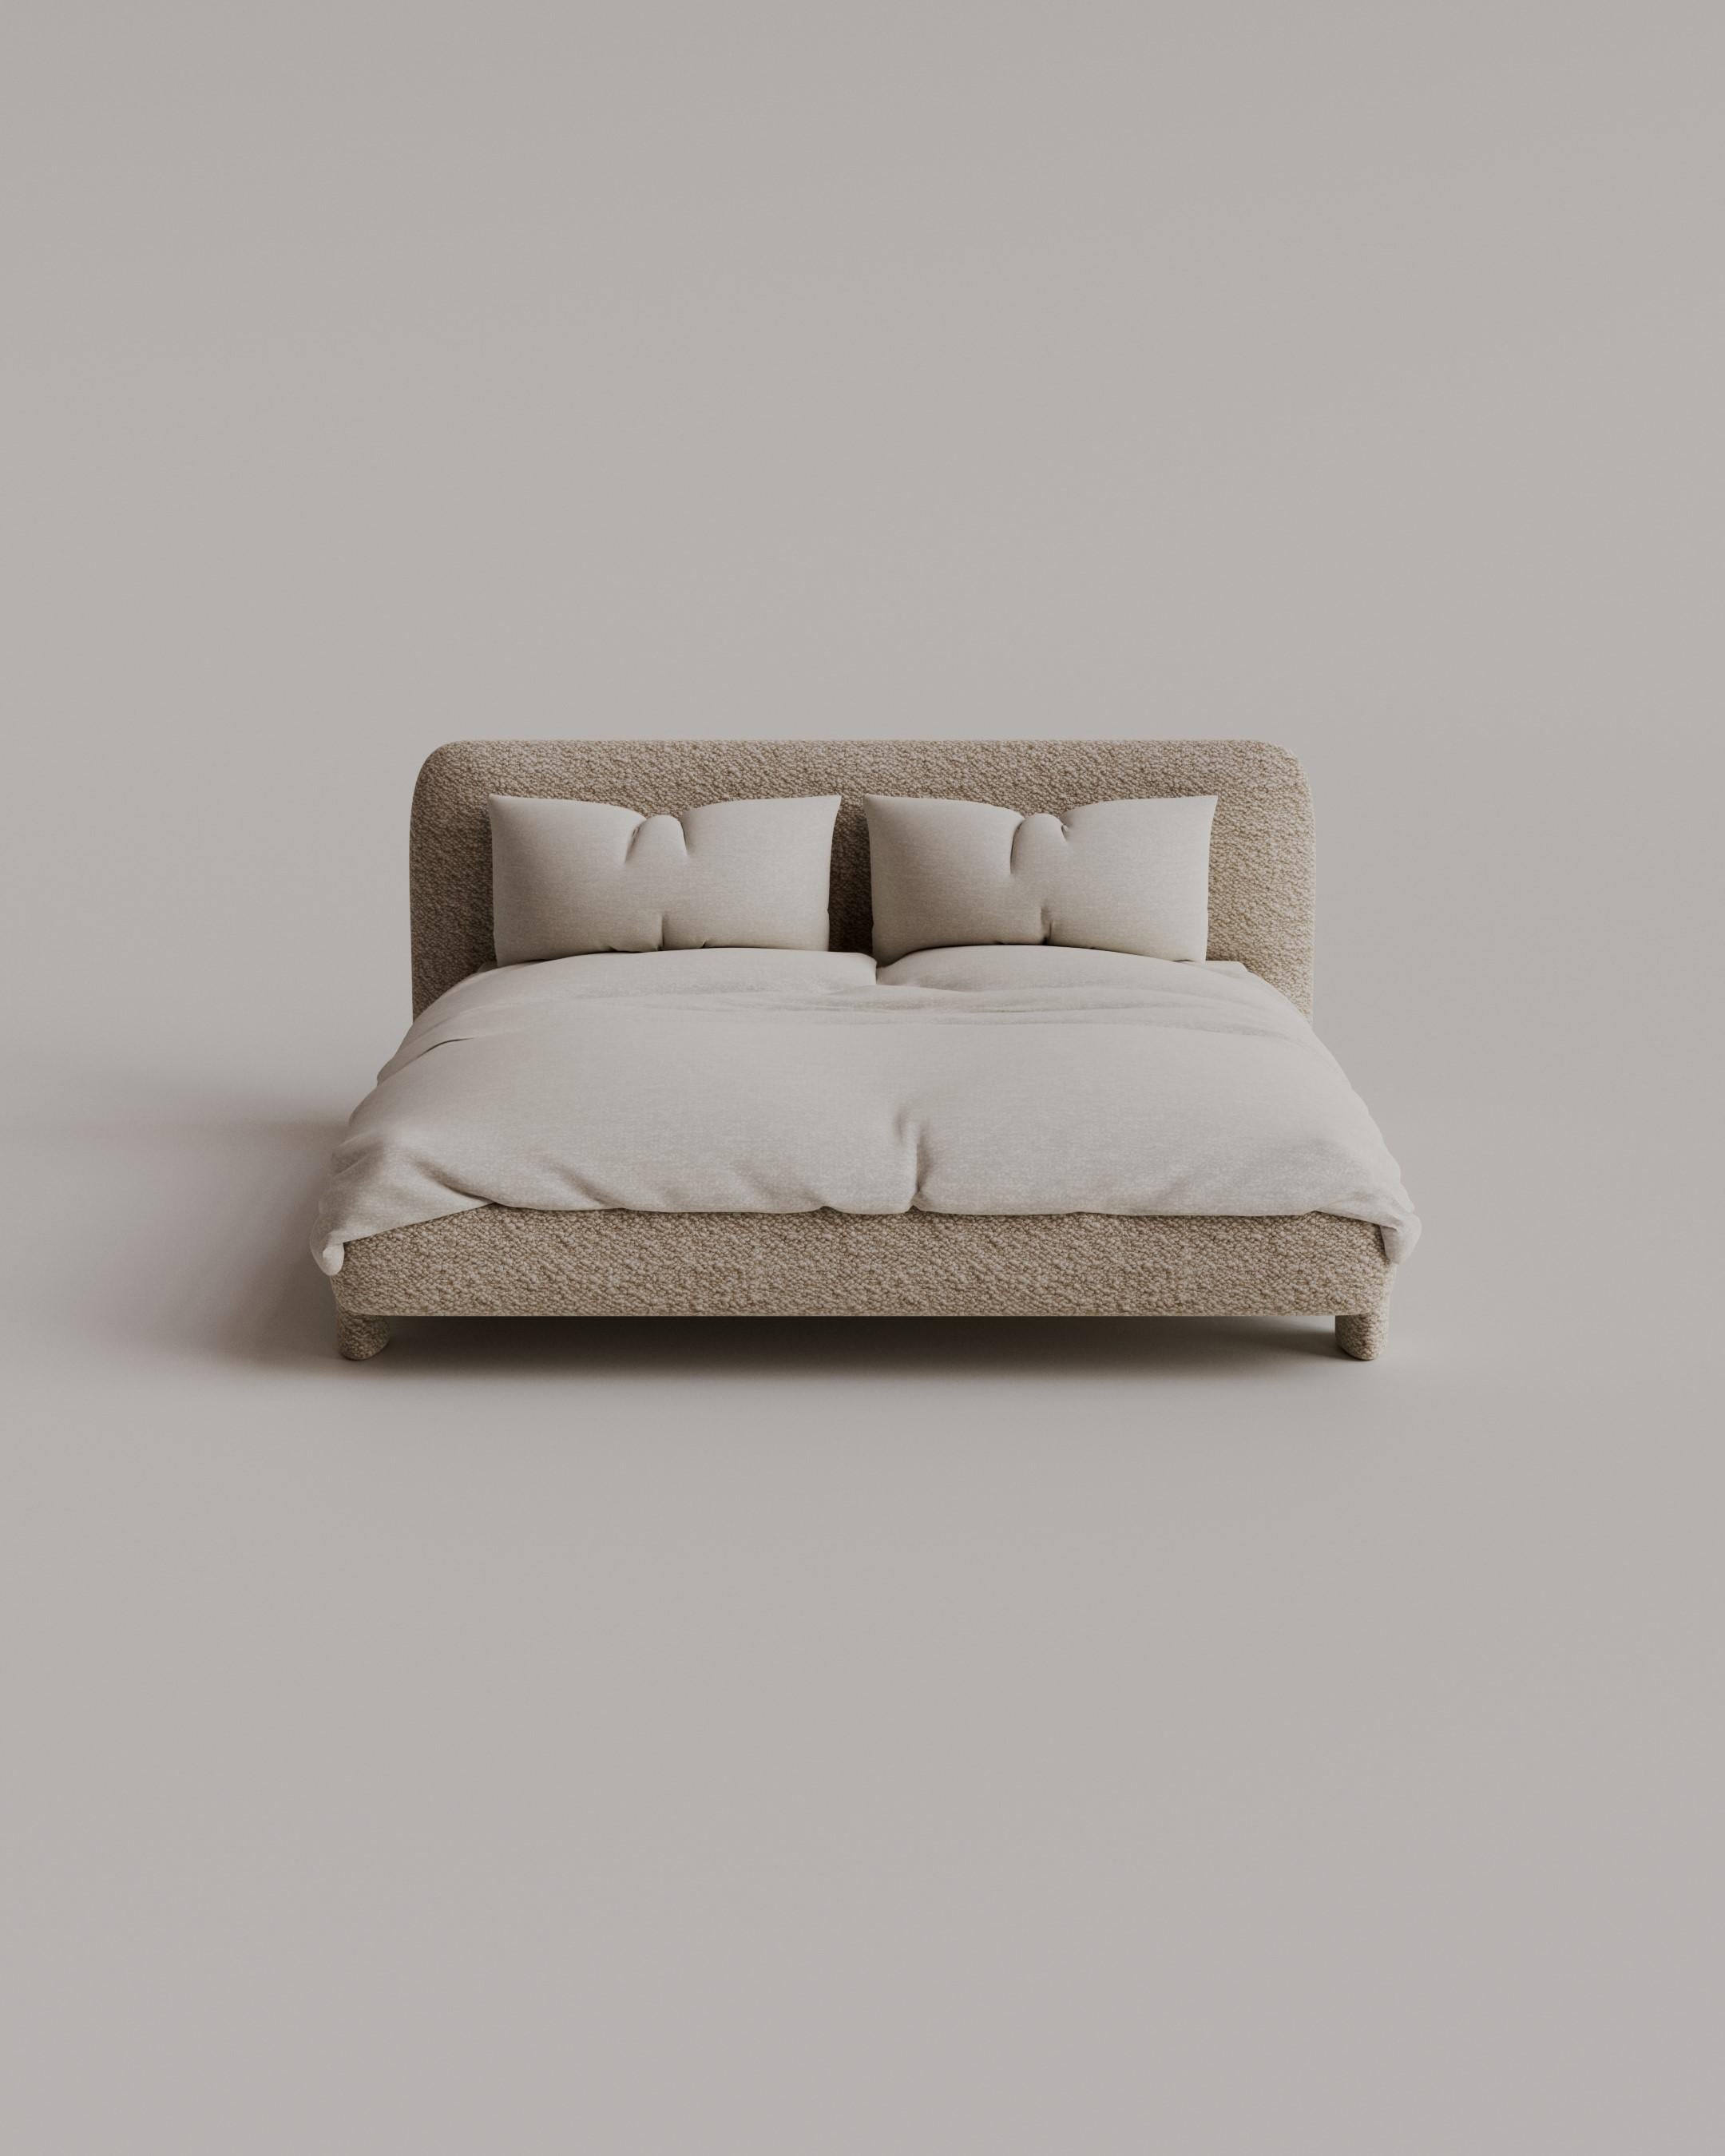 Treten Sie ein in das Reich des unvergleichlichen Luxus mit dem Bold Double Bed, in dem Komfort auf Opulenz trifft, um einen Ort der Ruhe und Entspannung zu schaffen. Die nahtlose Verschmelzung von überragendem Komfort und außergewöhnlichem Design